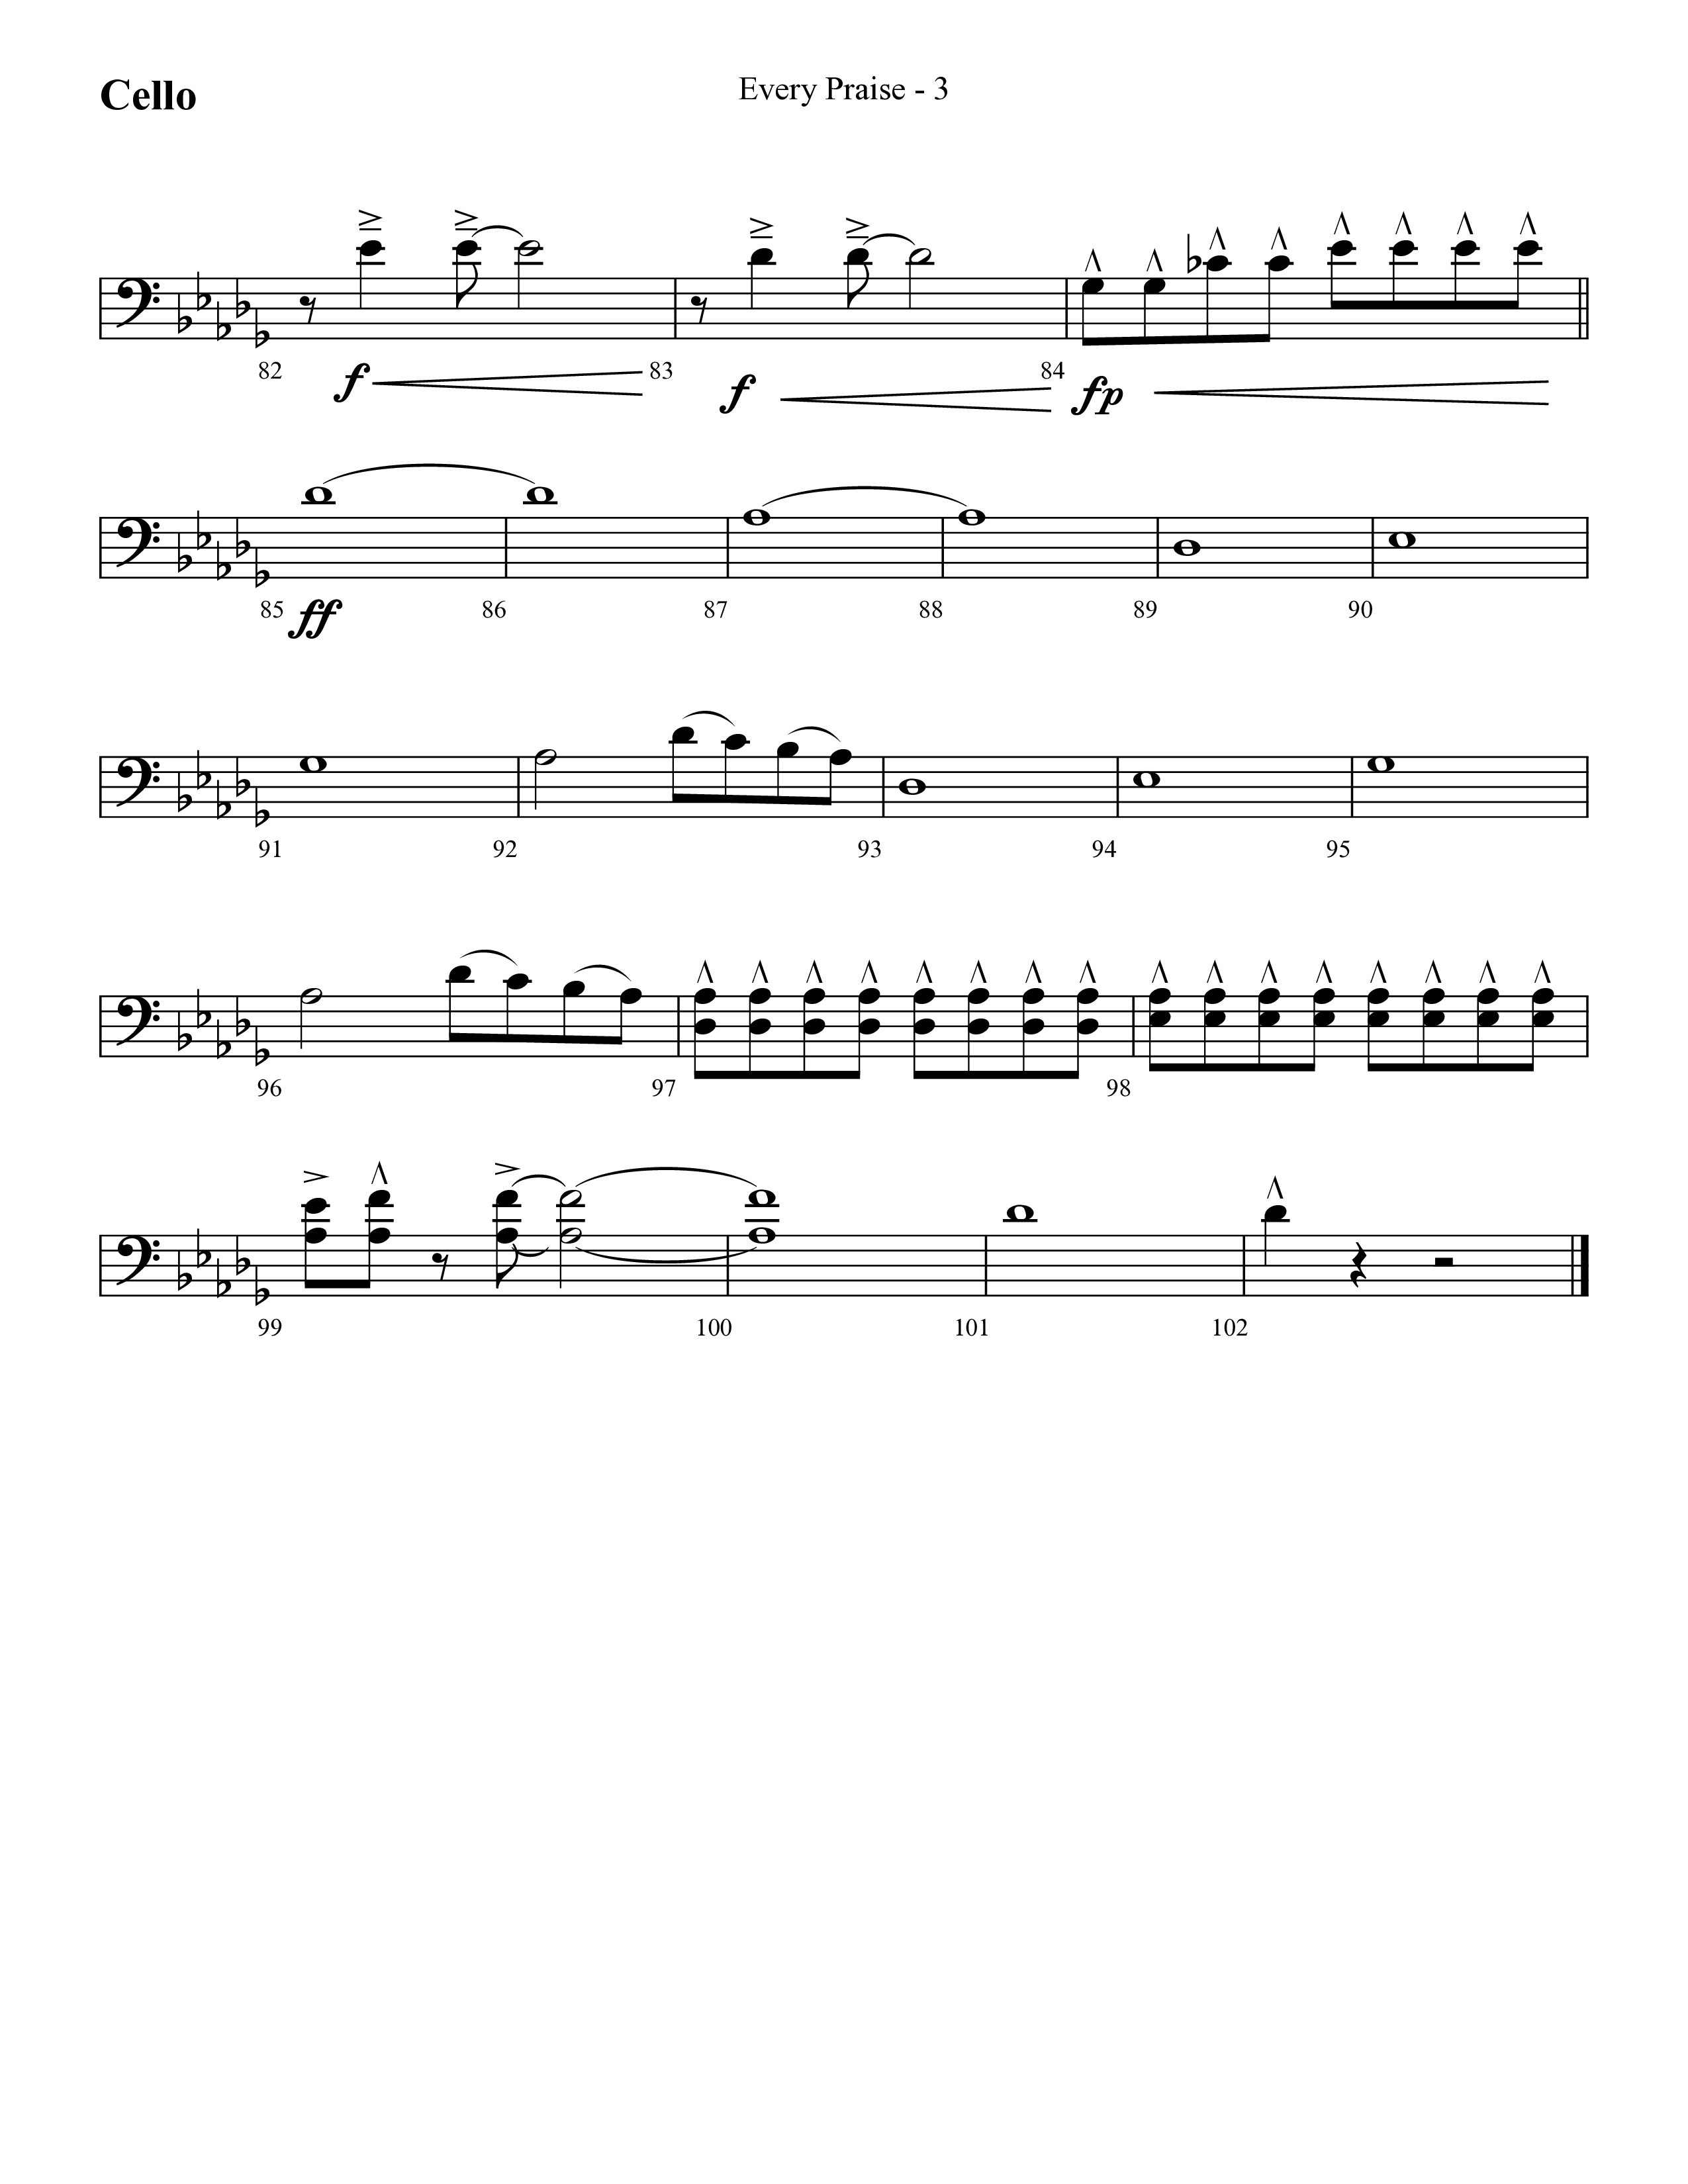 Every Praise (Choral Anthem SATB) Cello (Lifeway Choral / Arr. Cliff Duren)